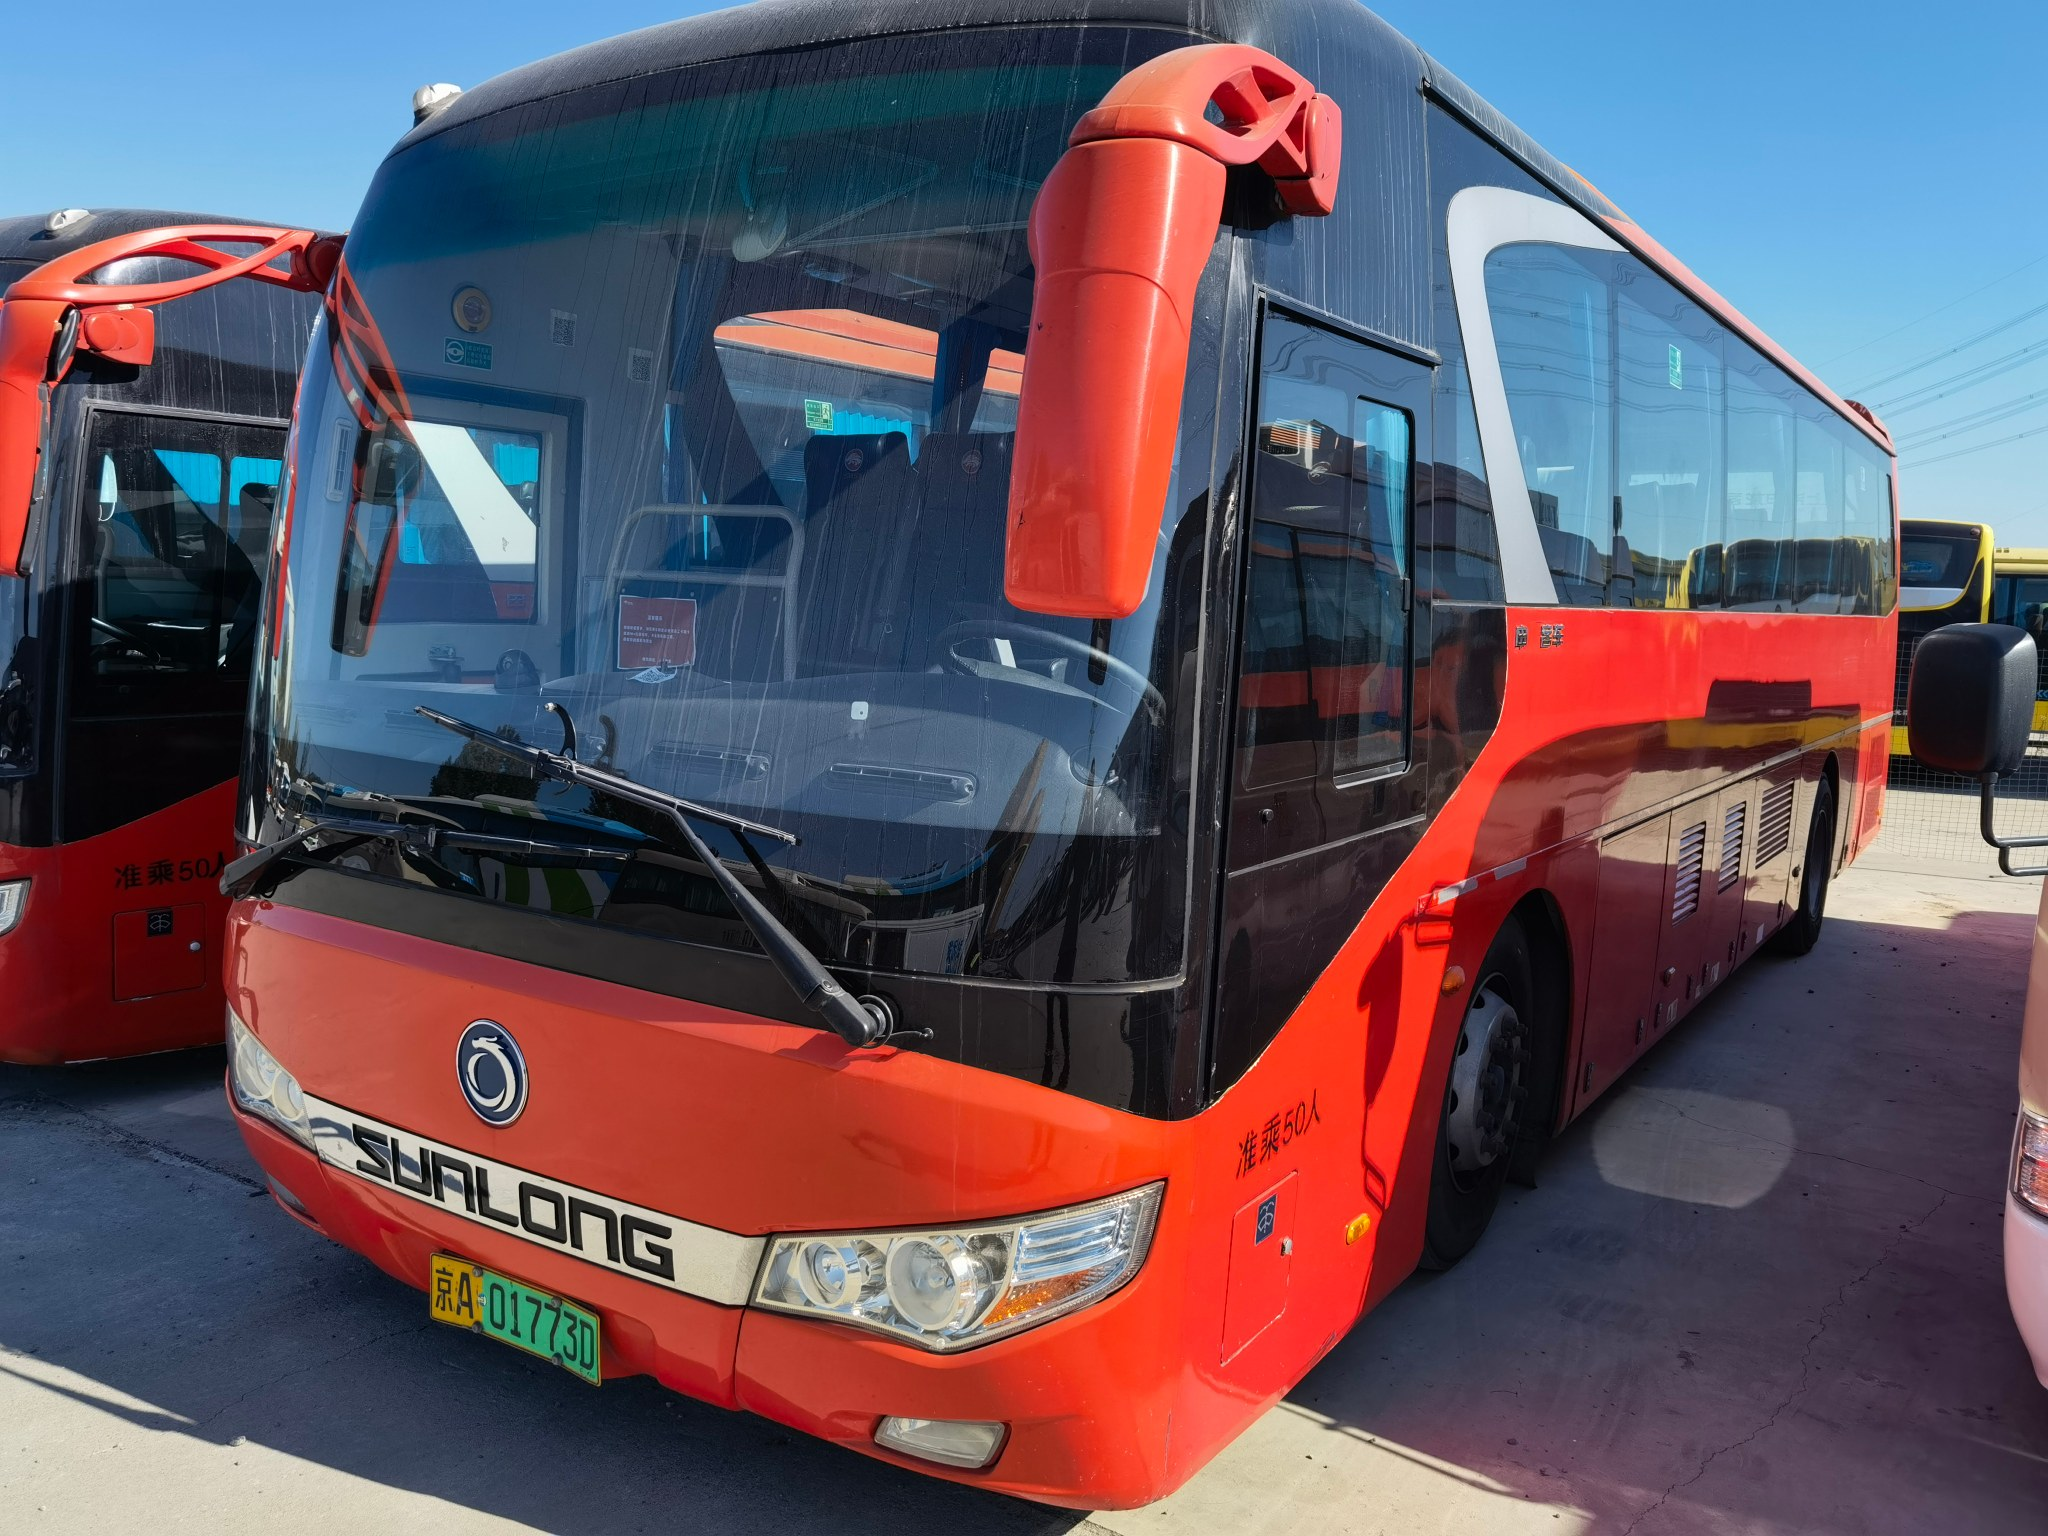 Shenlong 50 нови енергийни чисто електрически превозни средства, чисто електрически автобус, употребявана кола.Представено изображение